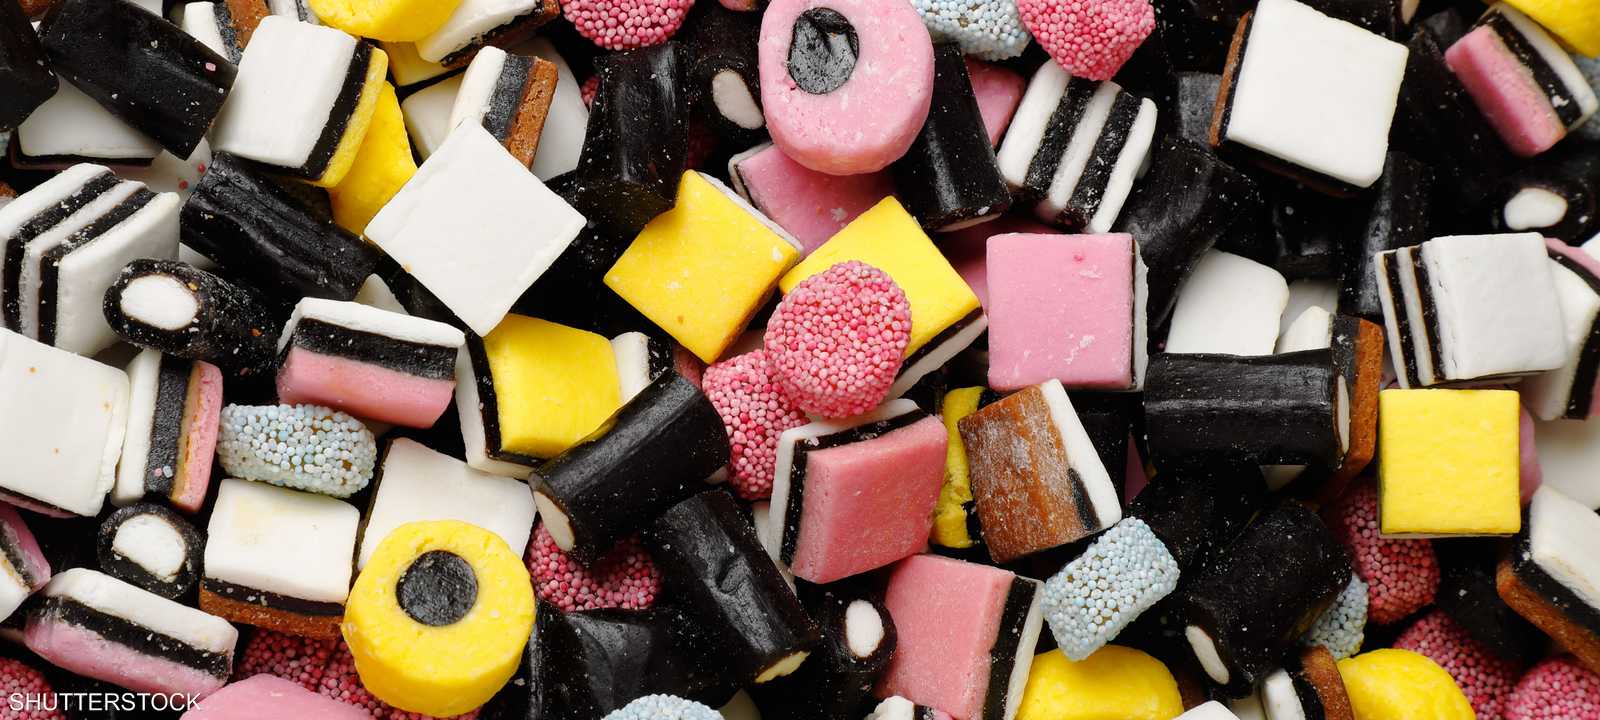 ارتفاع أسعار السكر ينغص على البريطانيين احتفالات عيد الفصح